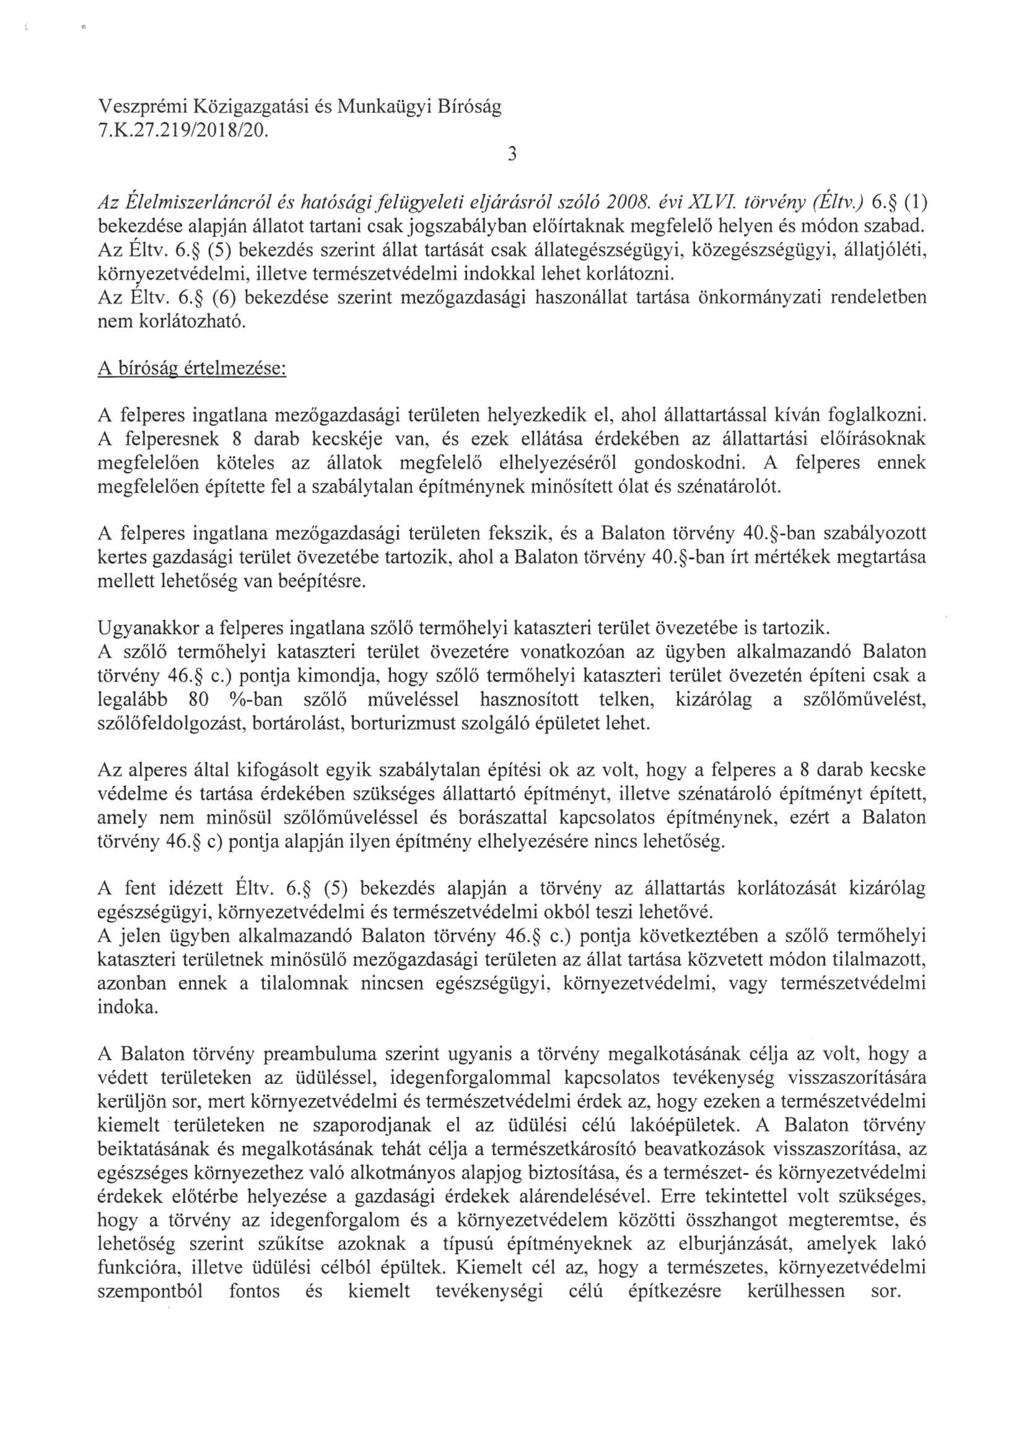 Veszprémi Közigazgatási és Munkaügyi Bírósá; Az Elelmiszerláncról és hatósági felügyeleti eljárásról szóló 2008. évi XLVI. törvény (Eltv. ) 6.